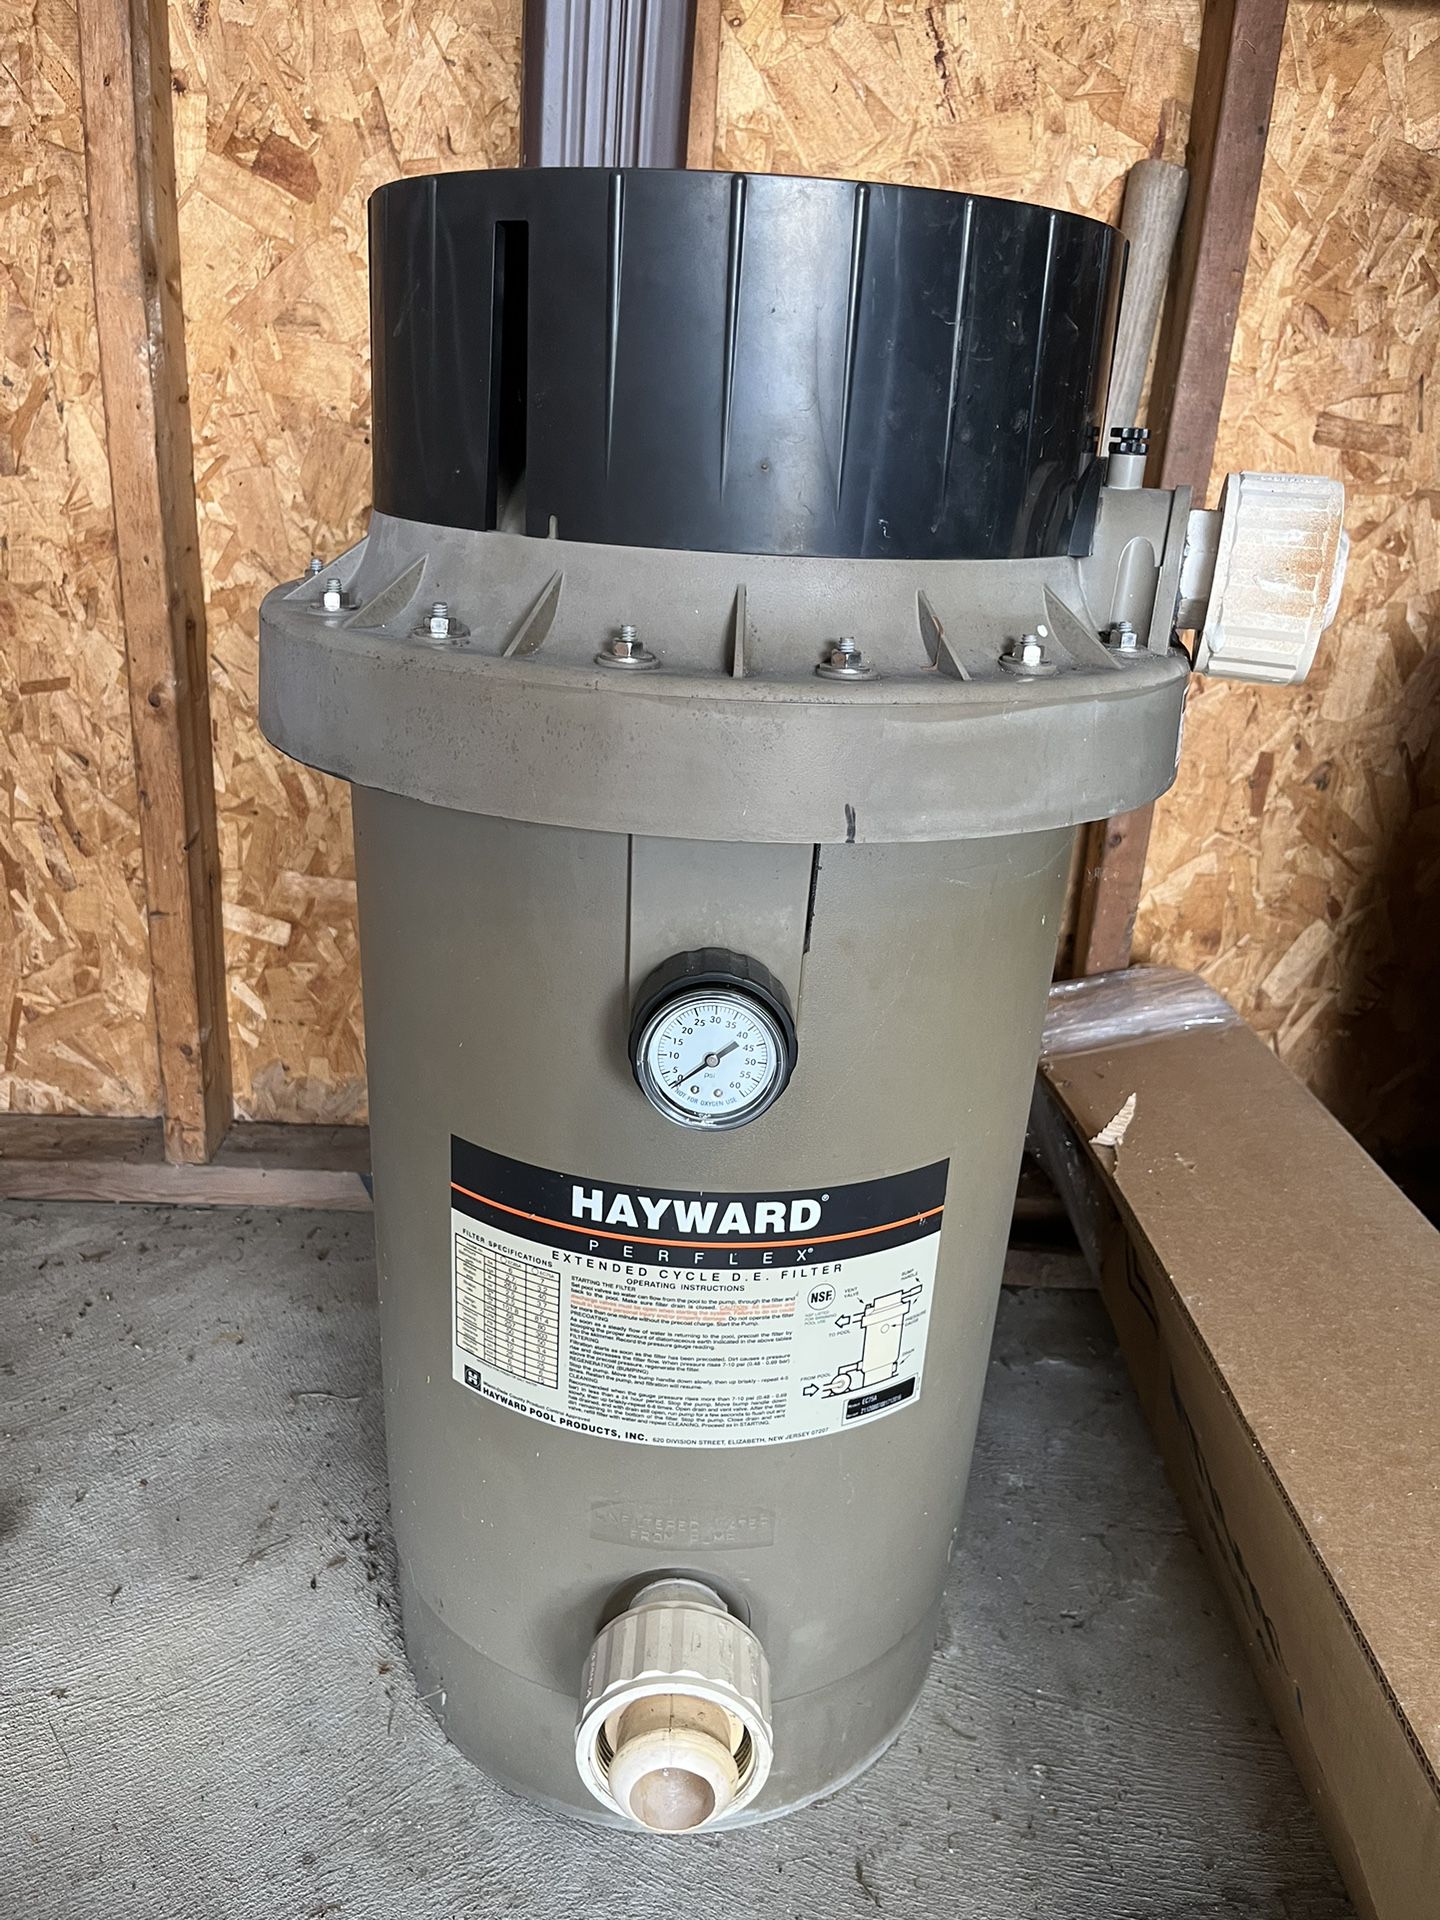 Hayward Pool Filter, Pump, and Base